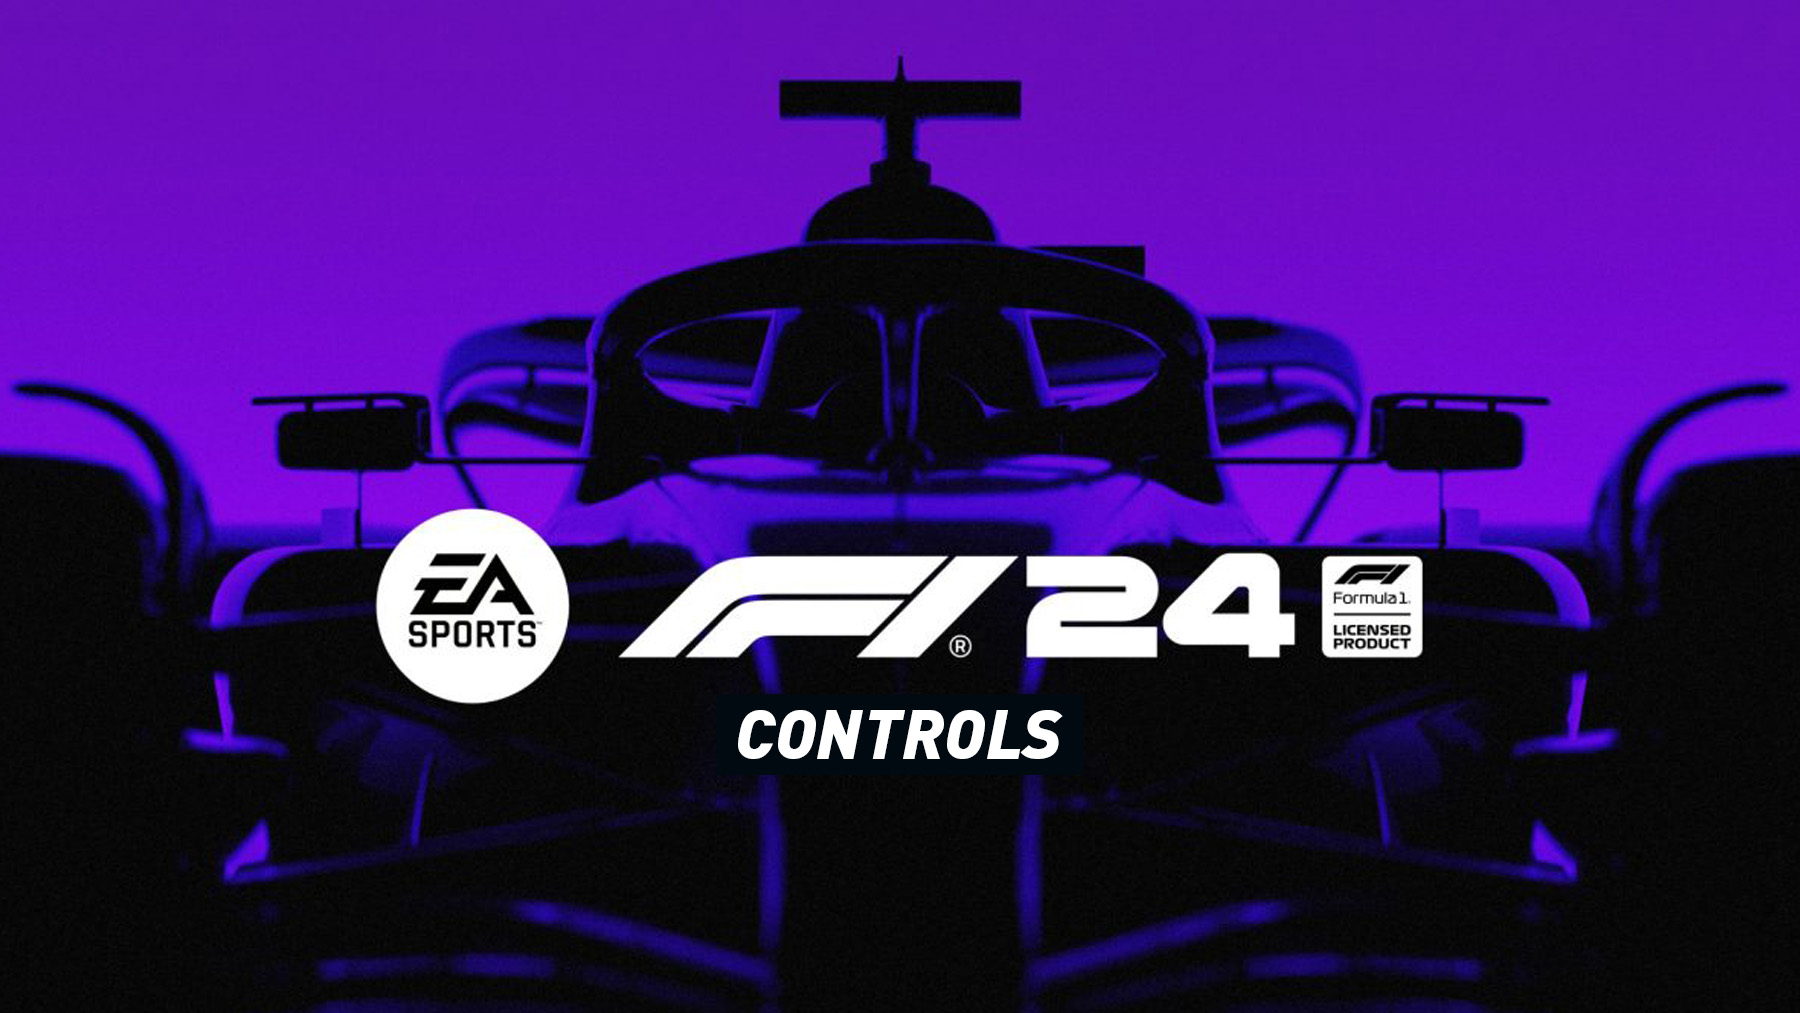 F1 24 Controls